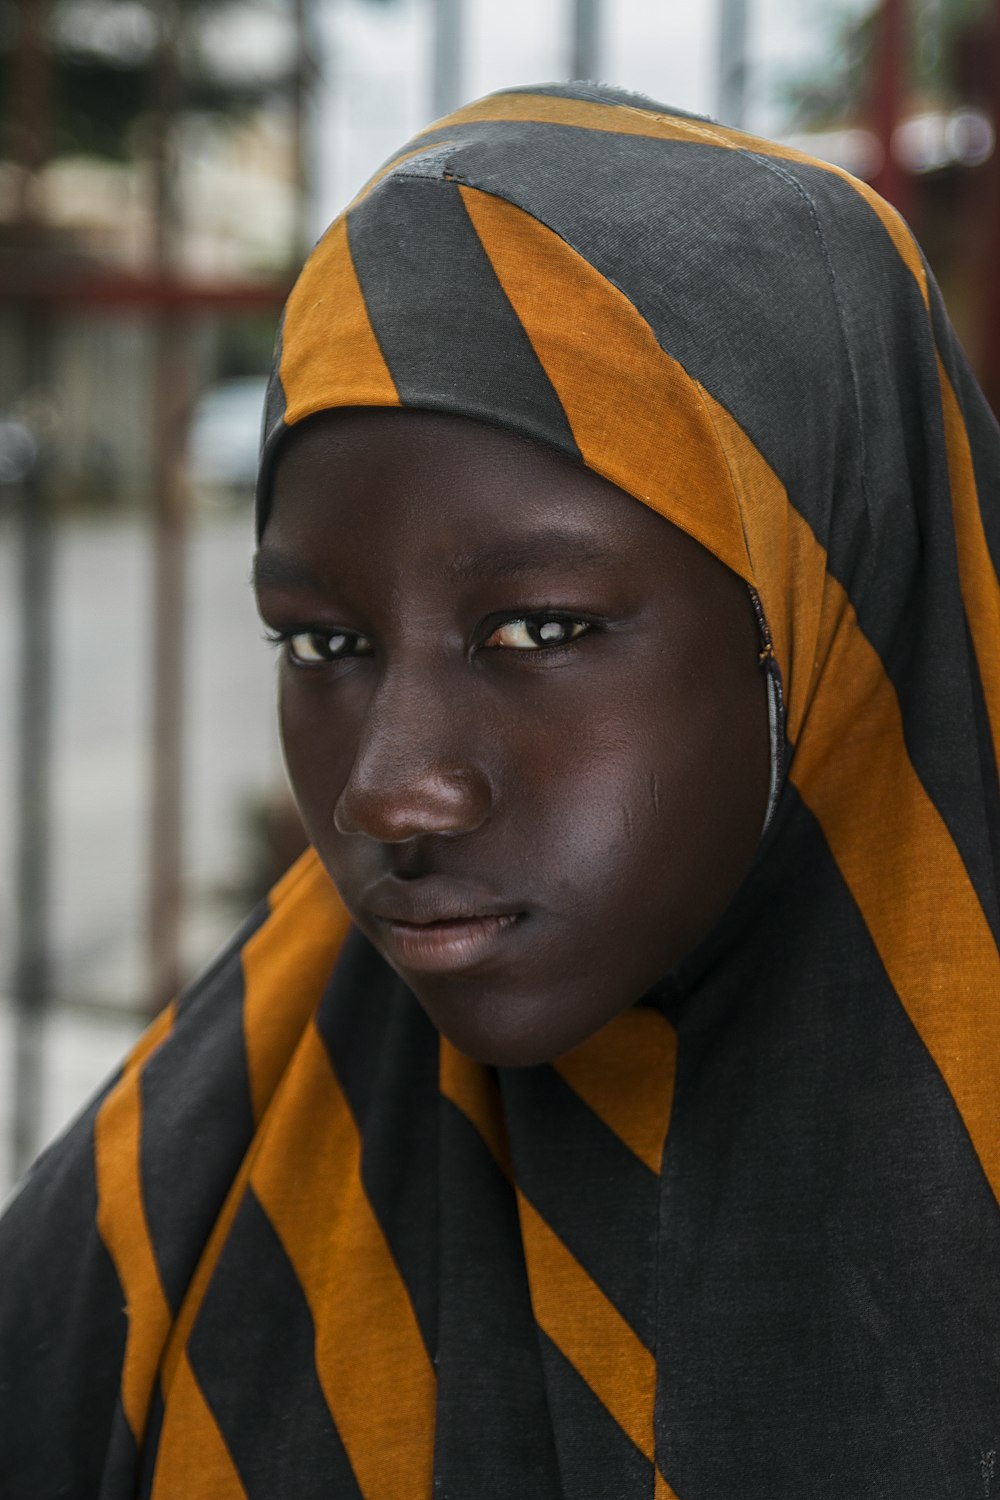 Mädchen in schwarz und orange gestreiftem Kopftuch in selektiver Fokusfotografie